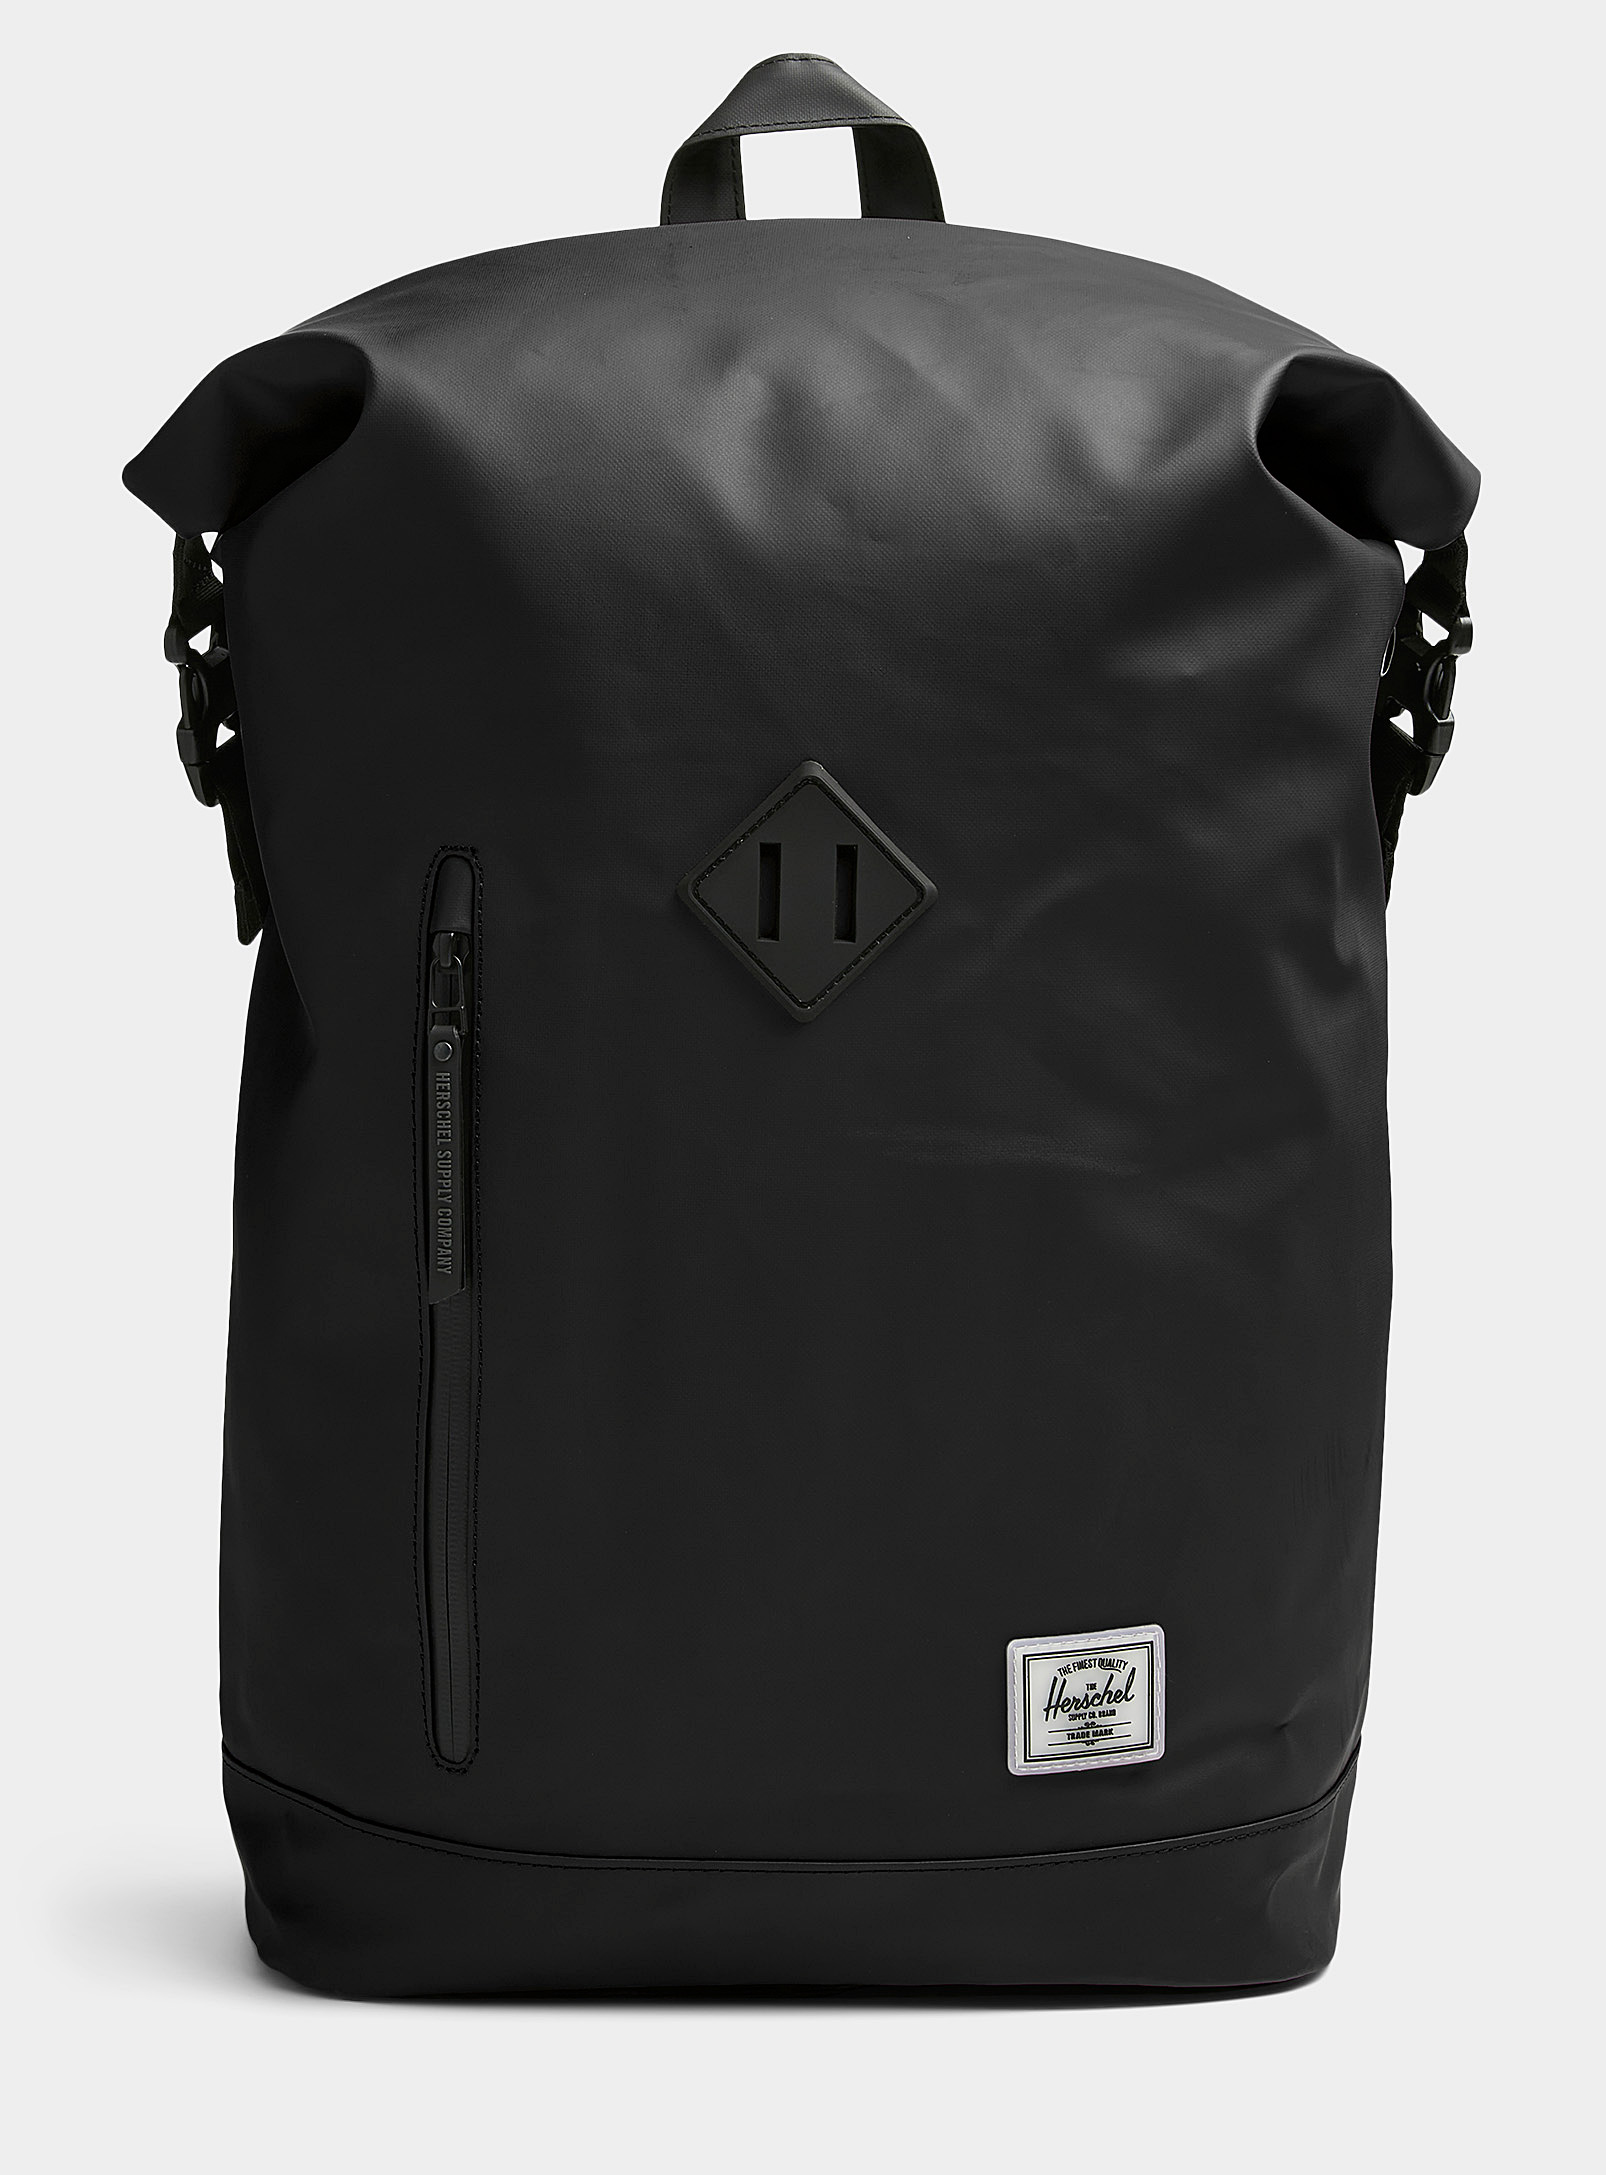 Herschel - Men's Roll Top backpack